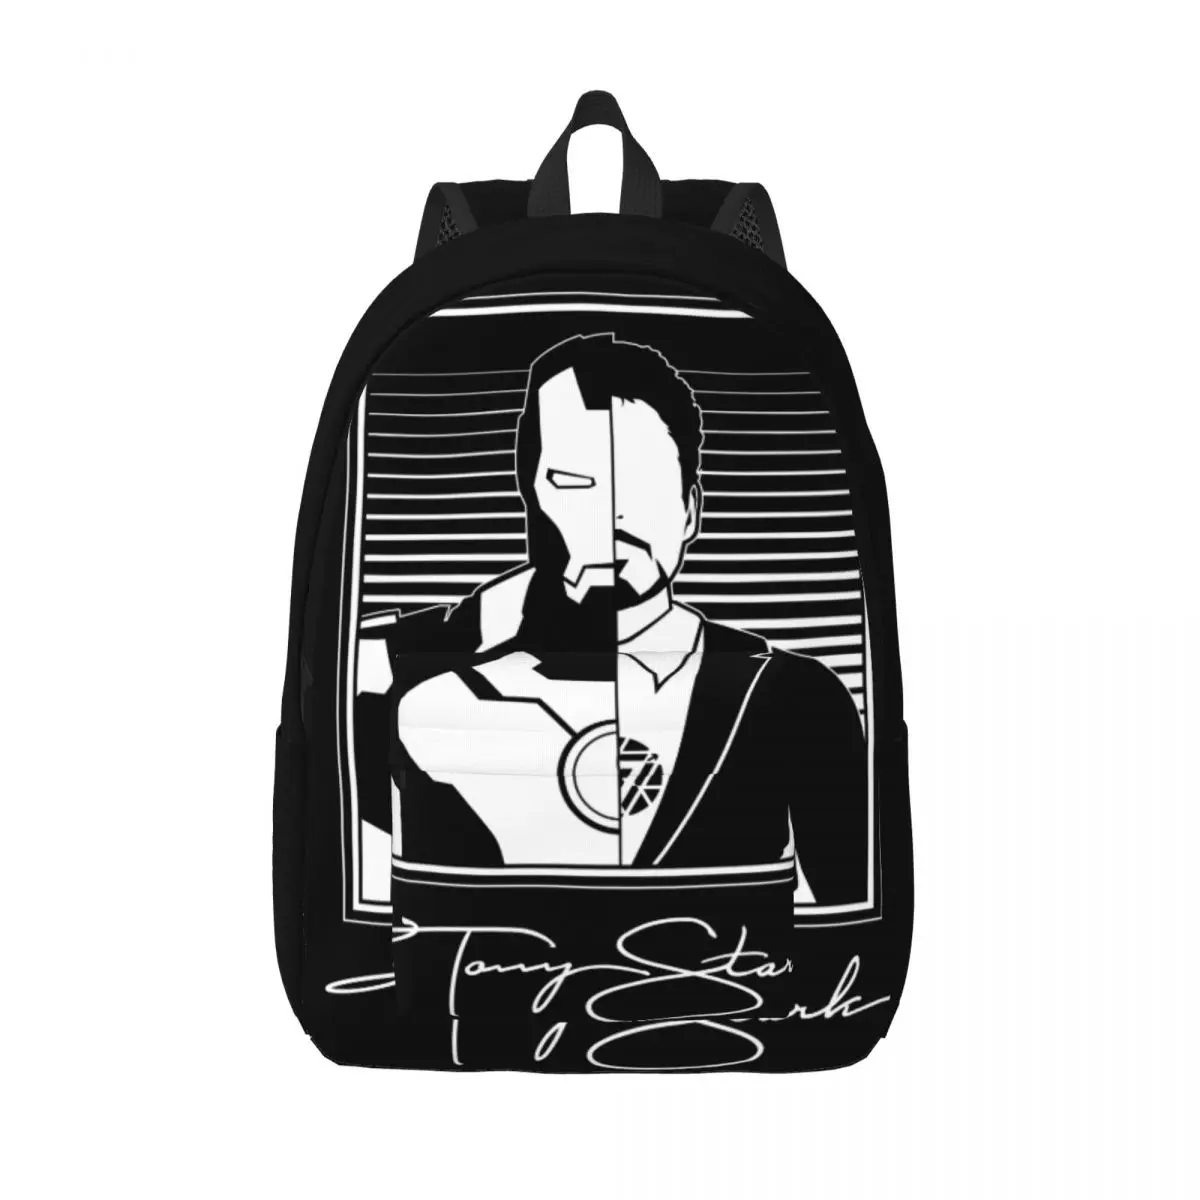 

Повседневный Легкий рюкзак с принтом Железного человека Тони Старка, для студентов, походов, путешествий, для мужчин и женщин, сумка на плечо для колледжа